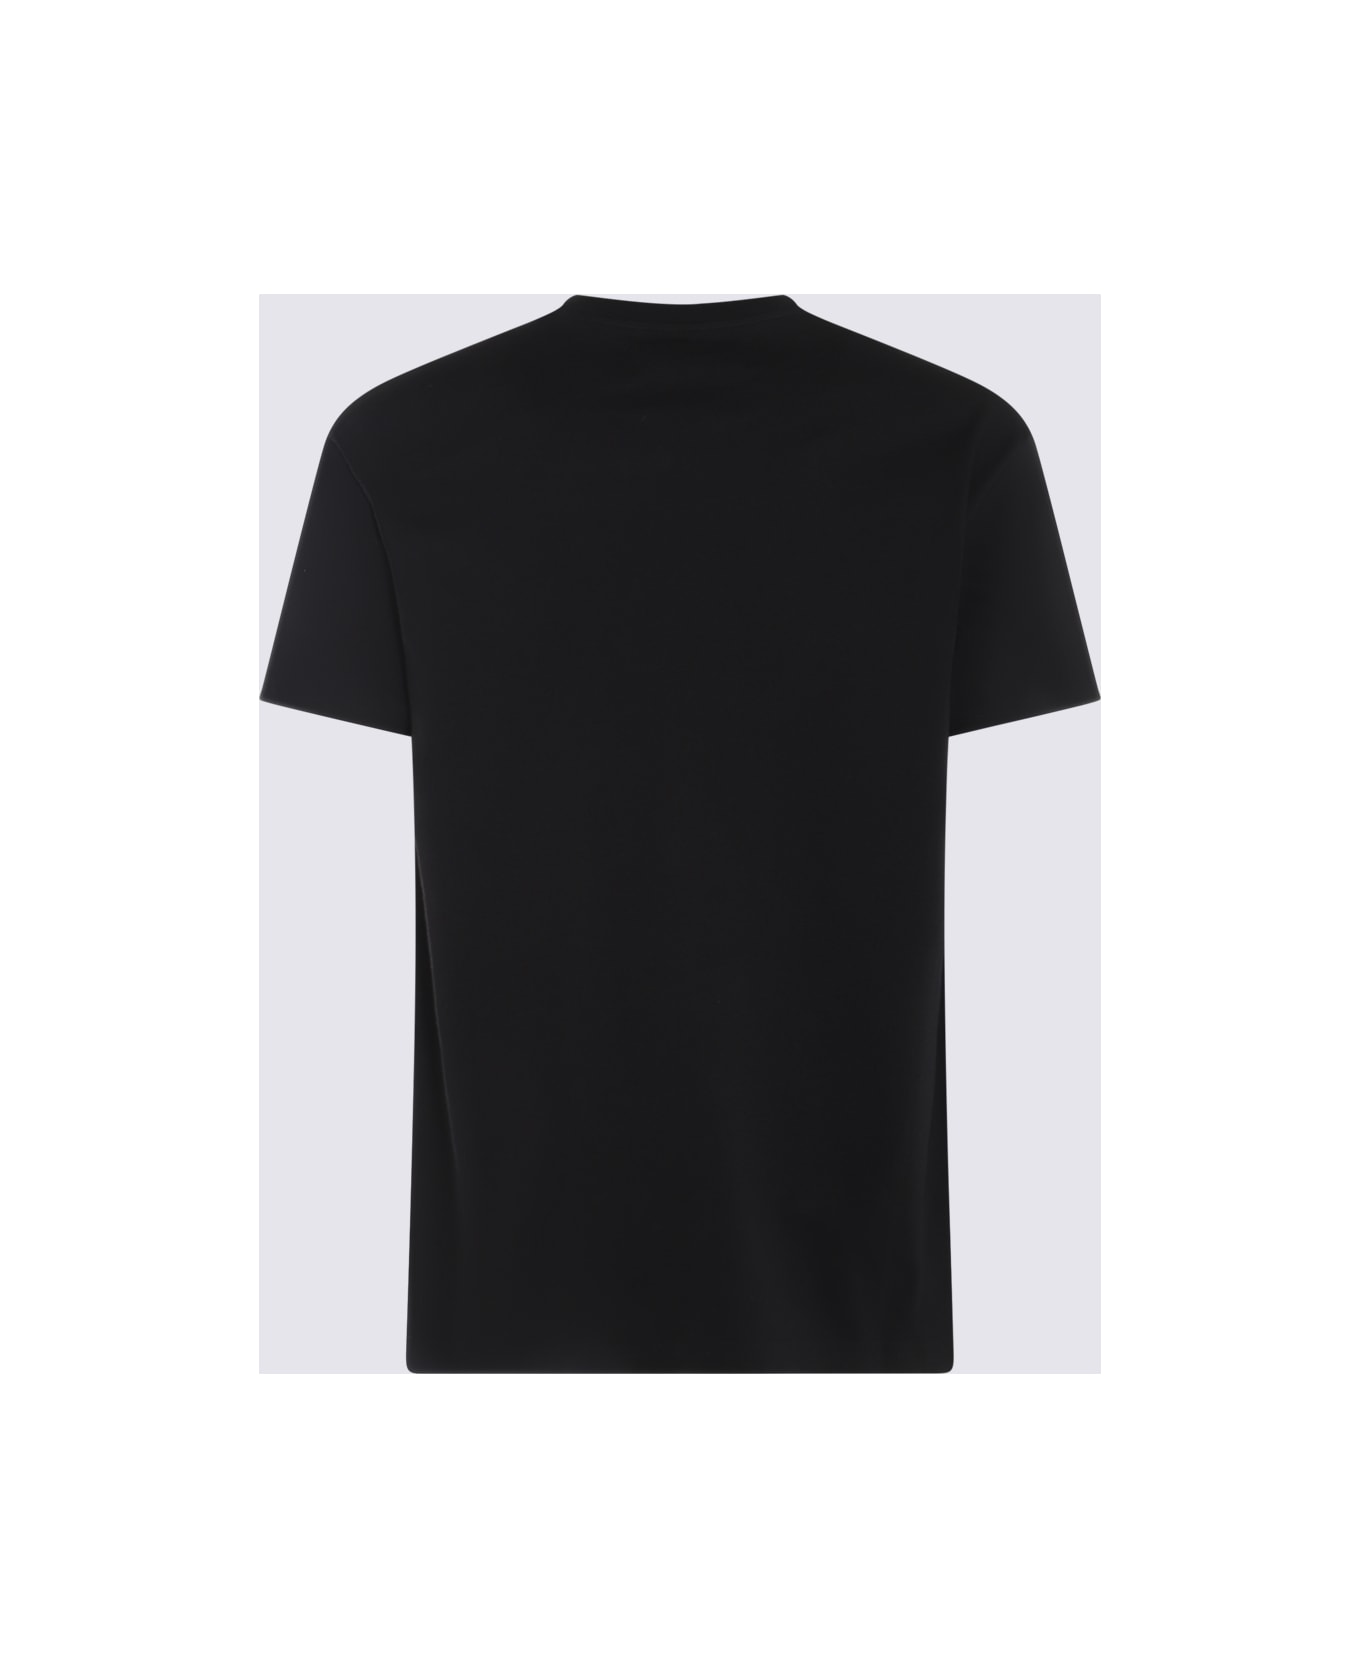 Vivienne Westwood Black And Beige Cotton T-shirt - Black Tシャツ